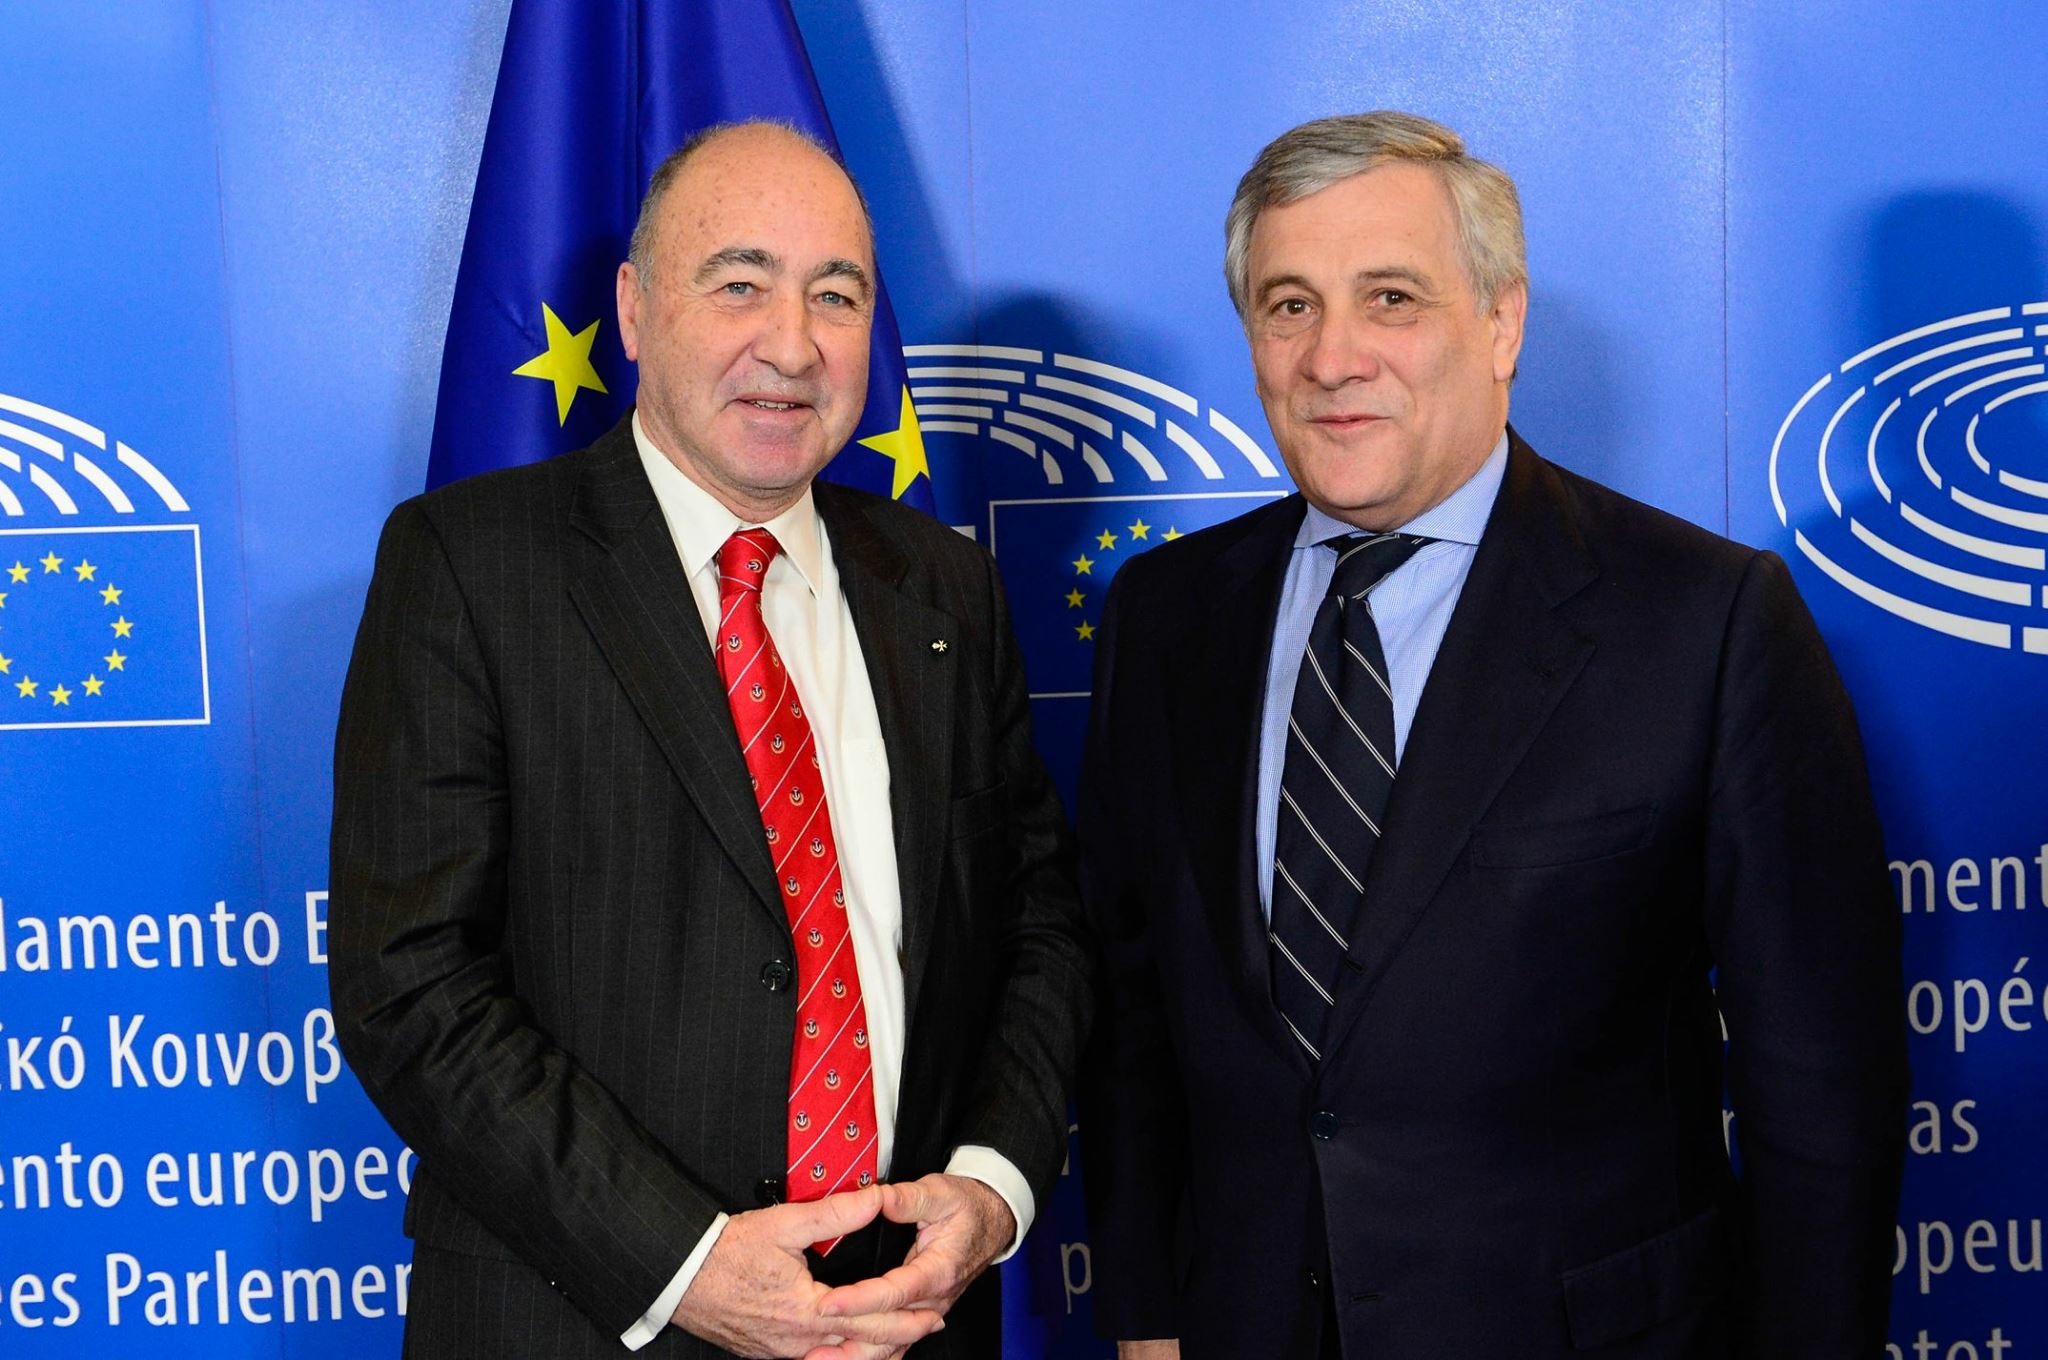 L’Ambassadeur de l’Ordre de Malte auprès de l’Union Européenne reçu par le président du Parlement européen